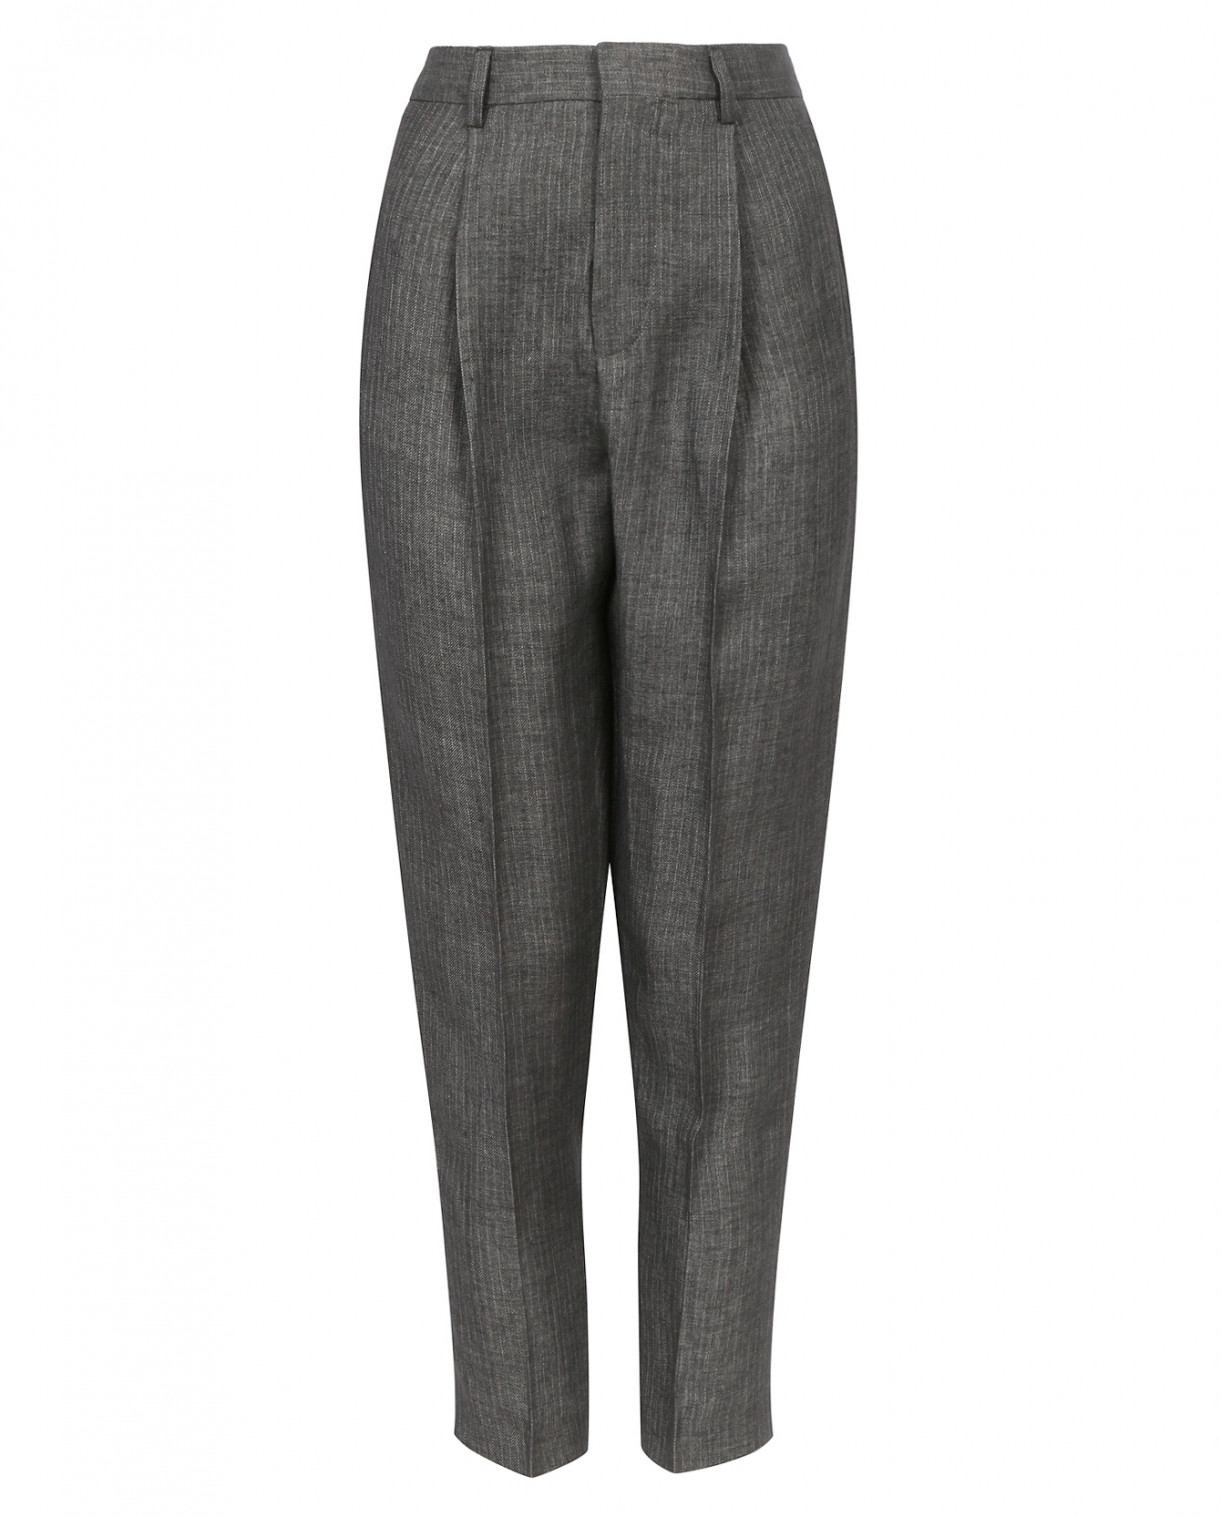 Классические зауженные брюки из льна с узором "полоска" Chloé Stora  –  Общий вид  – Цвет:  Серый